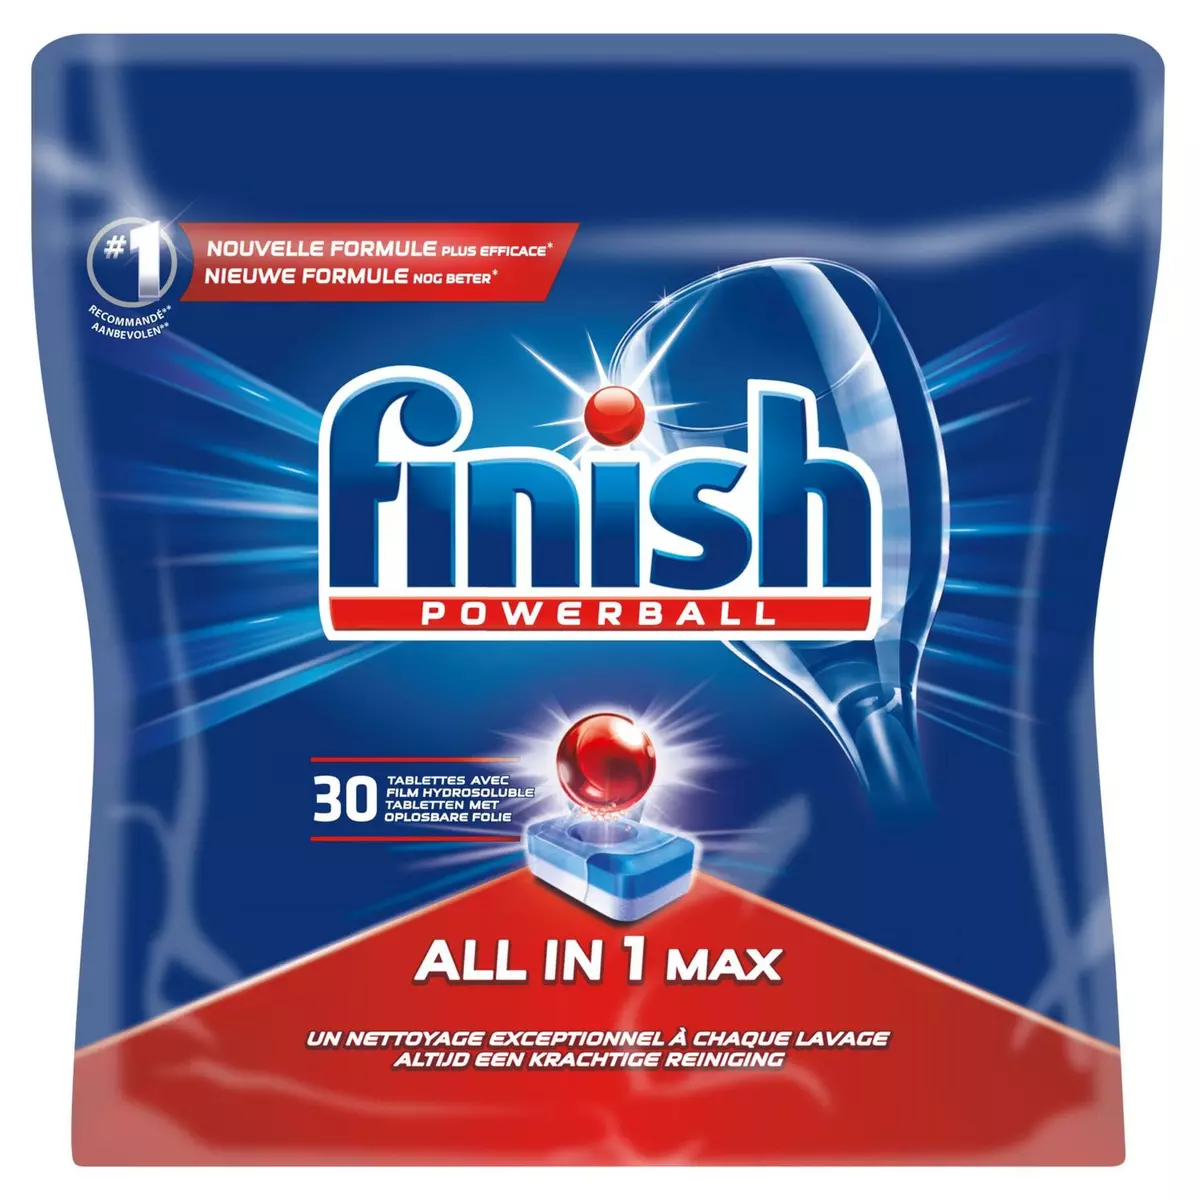 FINISH Powerball tablettes lave-vaisselle tout-en-1 max 30